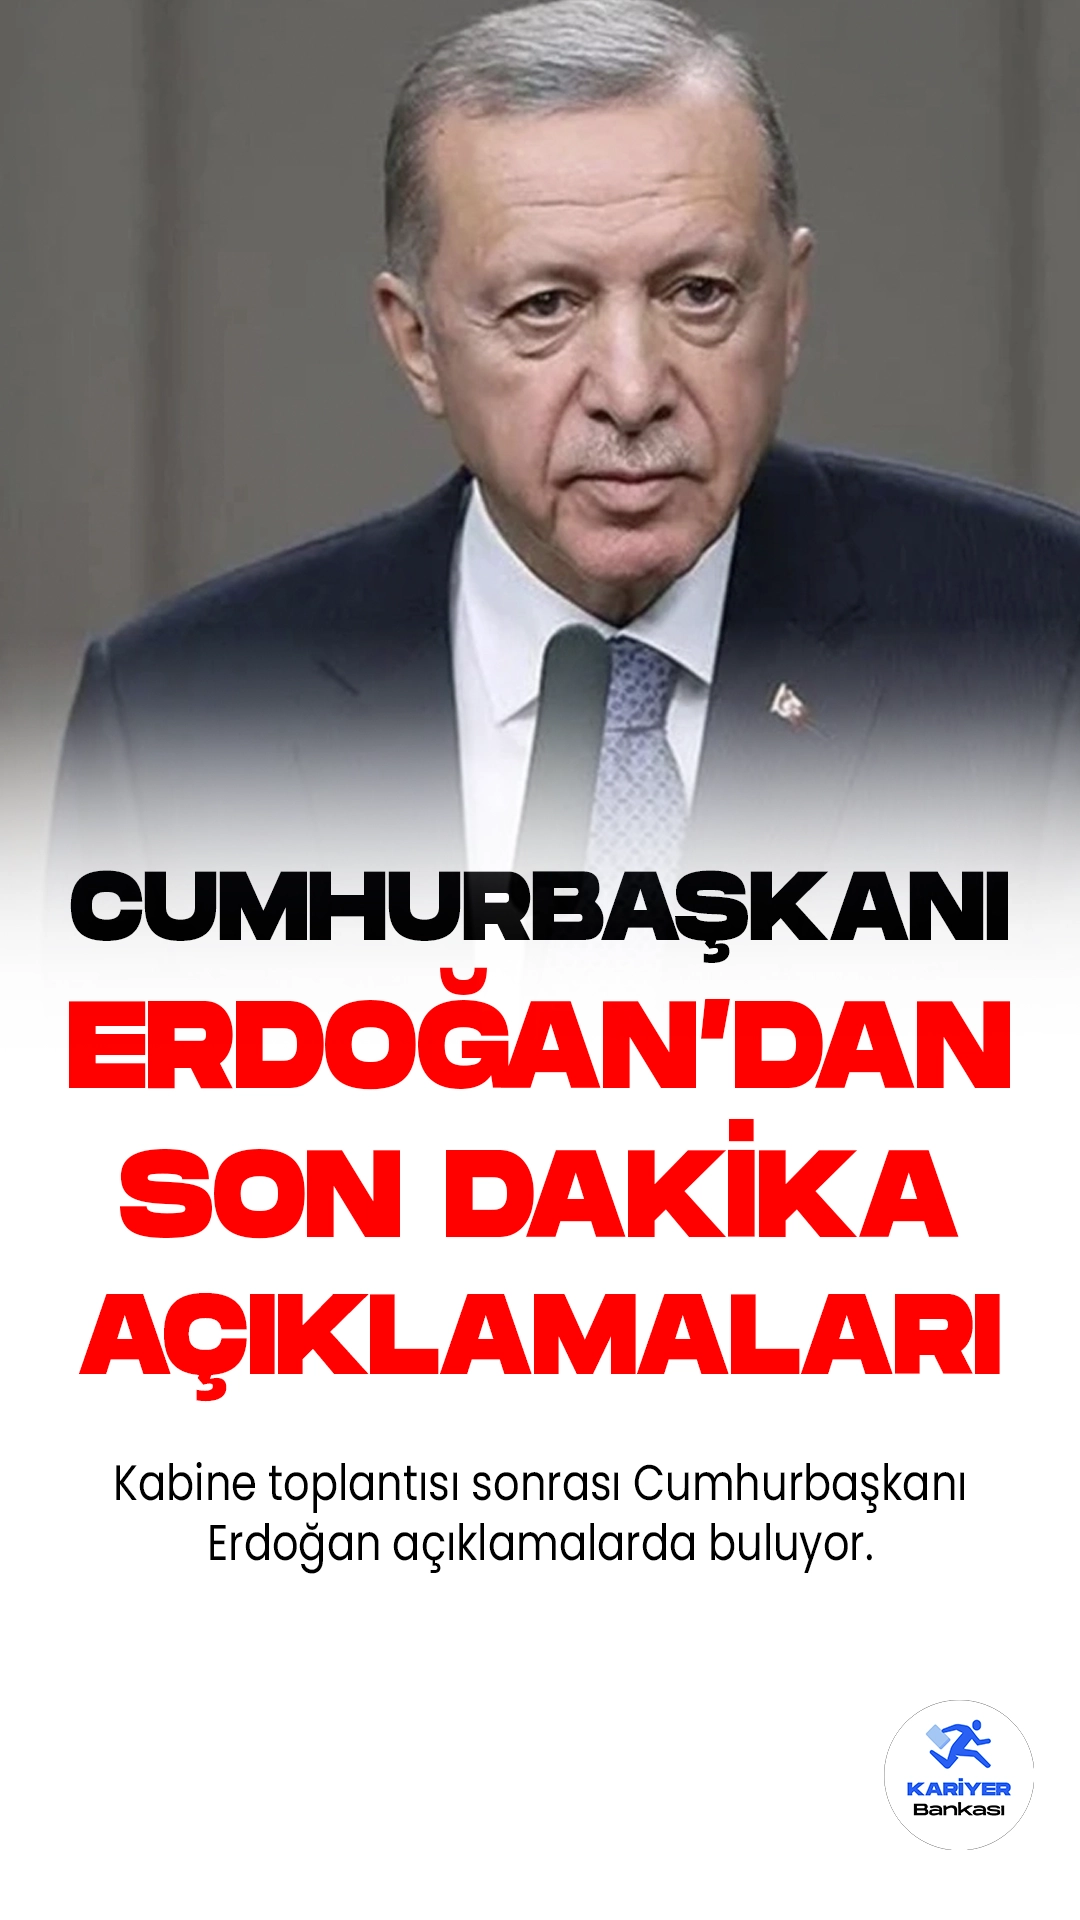 Beştepe'deki kabine toplantısının sona ermesinin ardından, Cumhurbaşkanı Recep Tayyip Erdoğan açıklama yapıyor. Toplantının öncelikli gündemi dış politikadaki gelişmelerdi. Ekonomi ve iç siyasete ilişkin başlıklar da değerlendirildi.